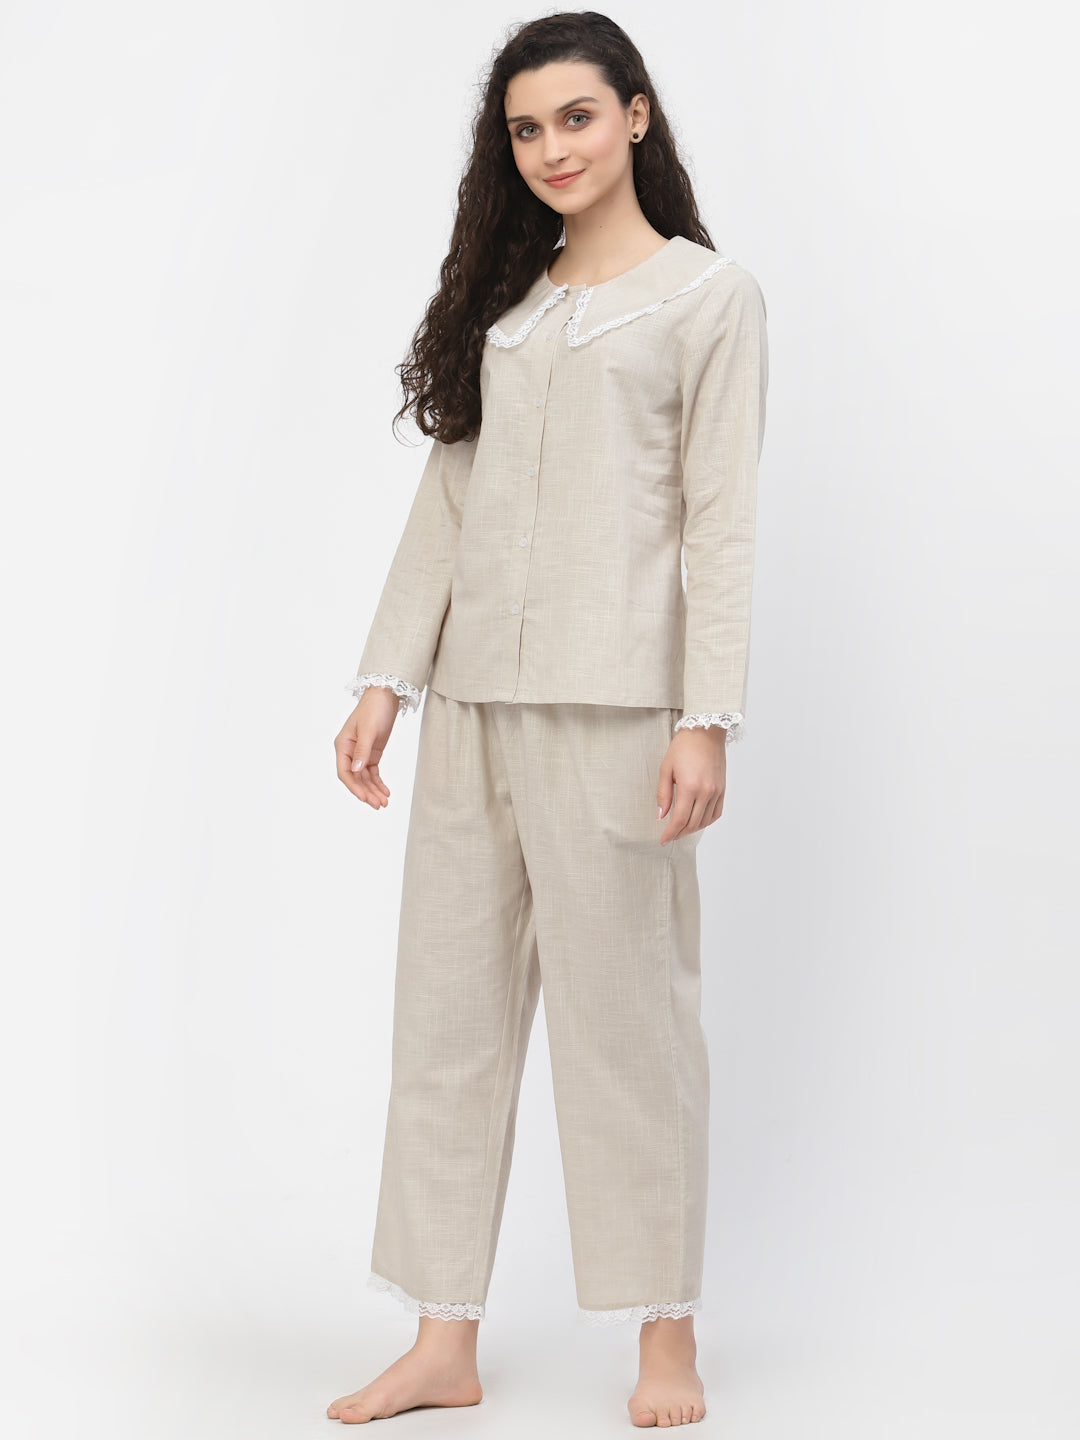 Blanc9 Lacy Cotton Beige Pretty Pyjama Night Suit-B9NW41BG